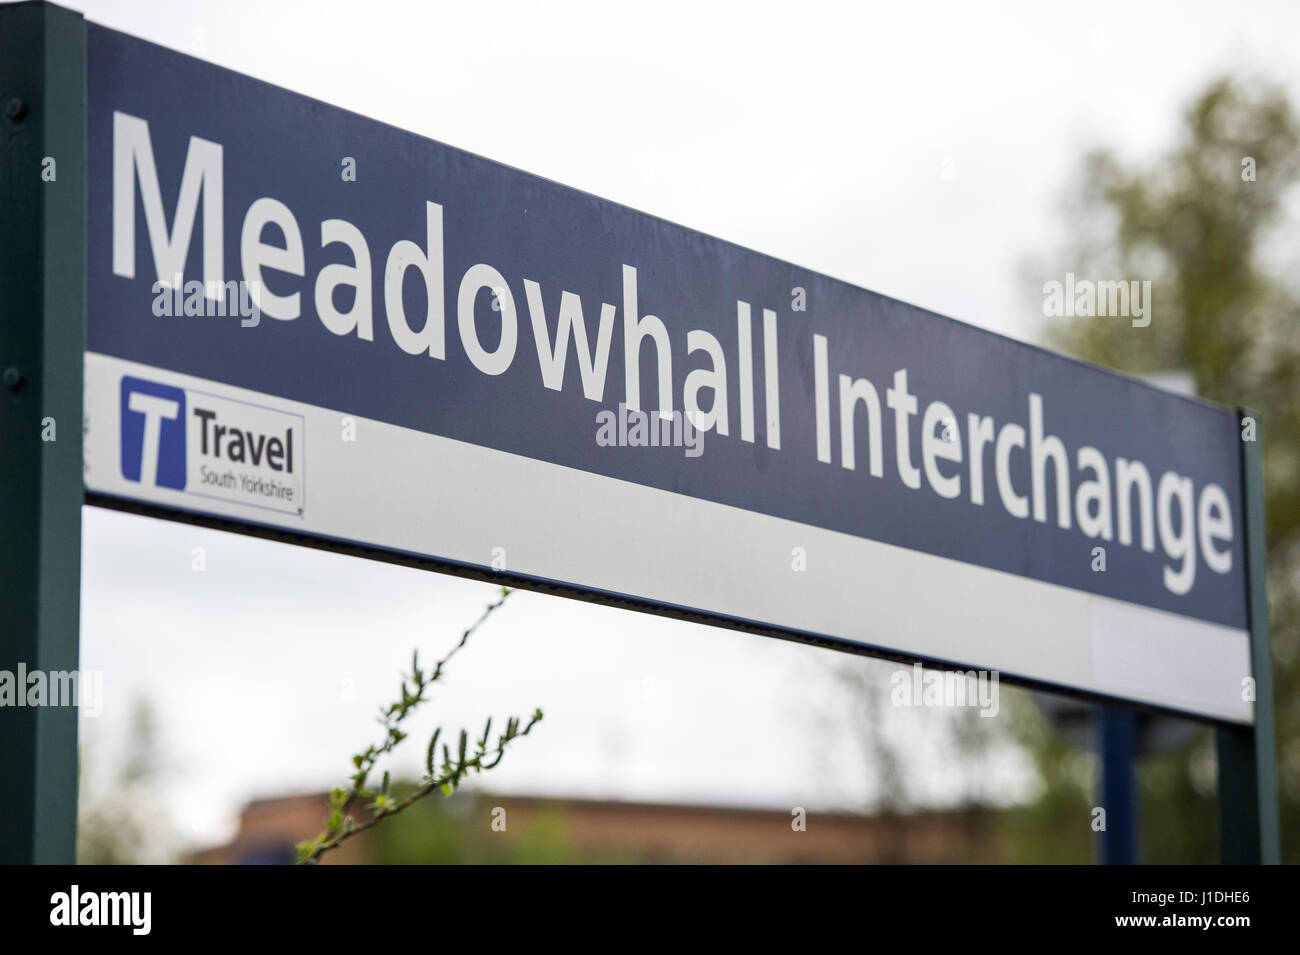 Meadowhall Interchange, Sheffield donde una chica de 16 años murió tras ser golpeado por un tren Foto de stock